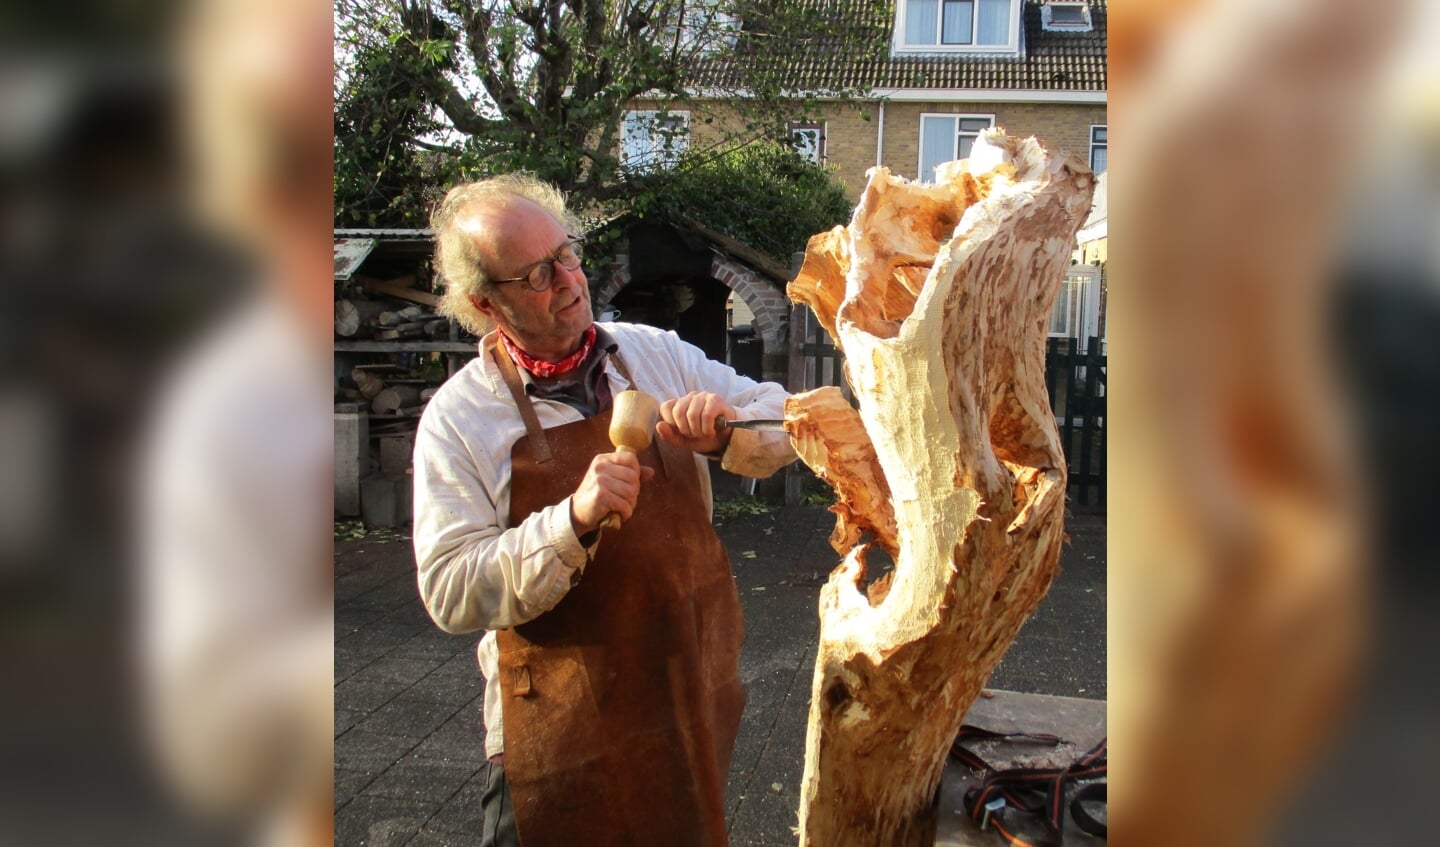 Kunstenaars demonstreren de kunst van het houtsnijden.